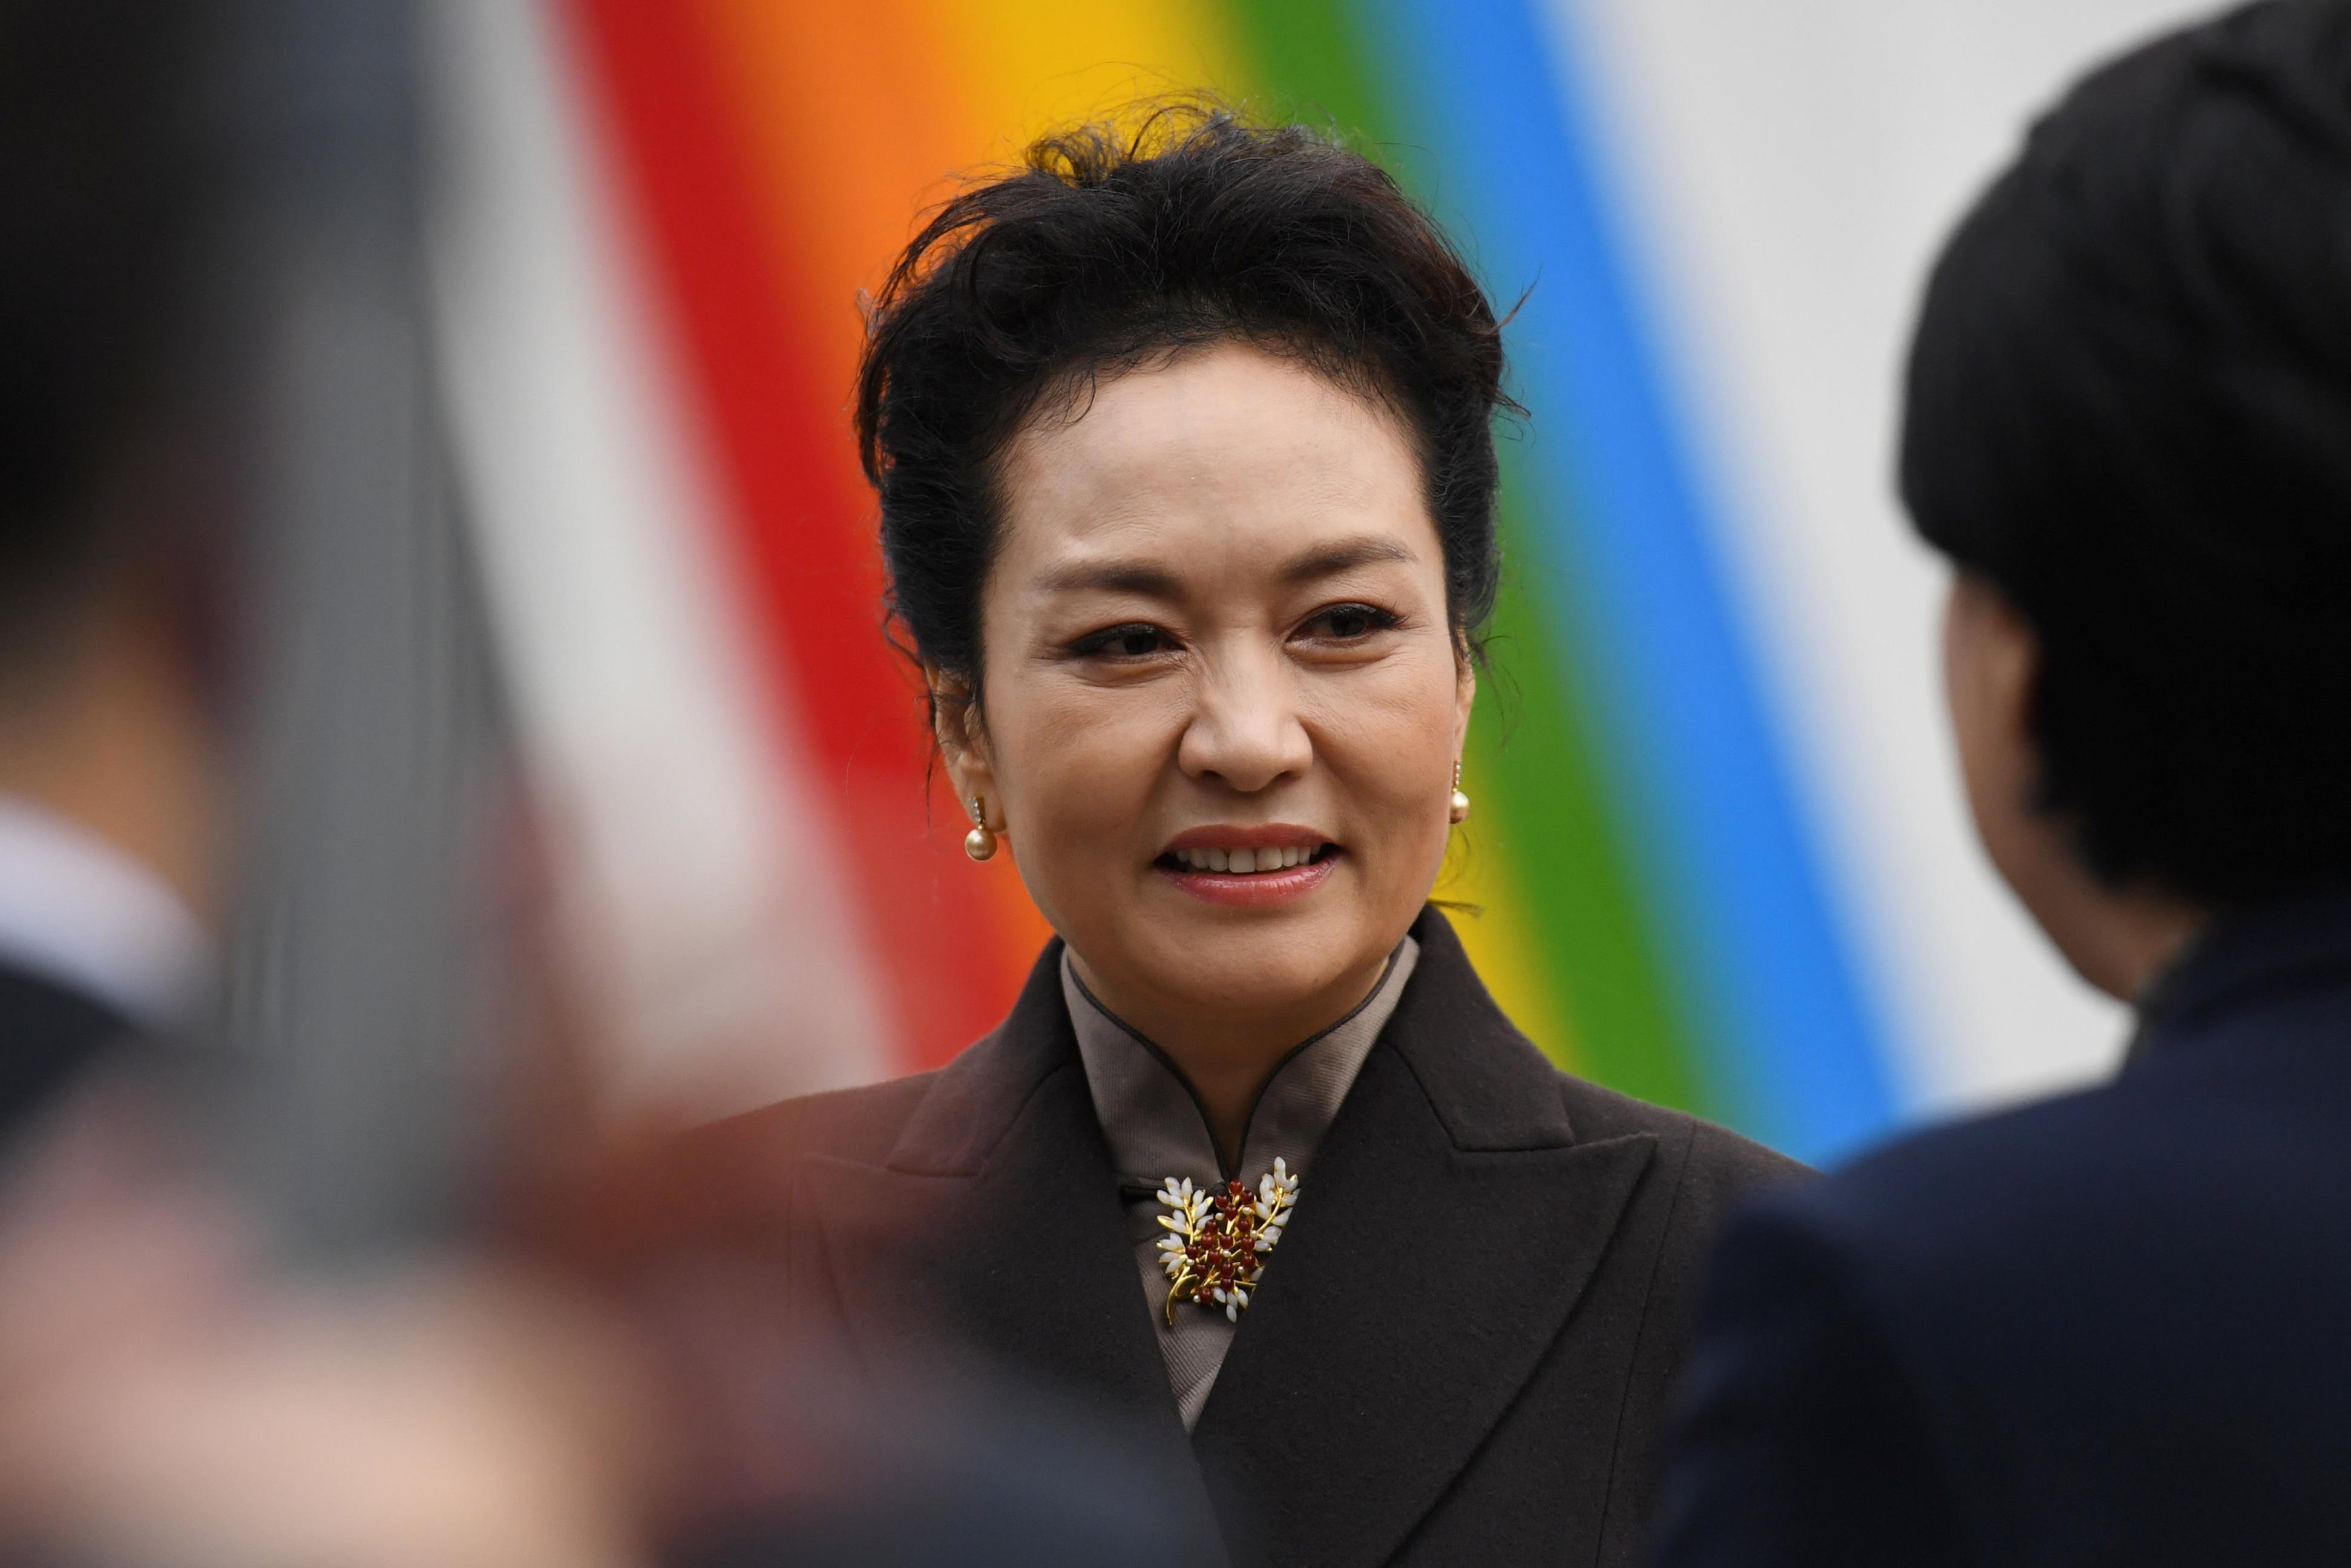 中国第一夫人彭丽媛在大陆官场的脚色日益受到关注。路透